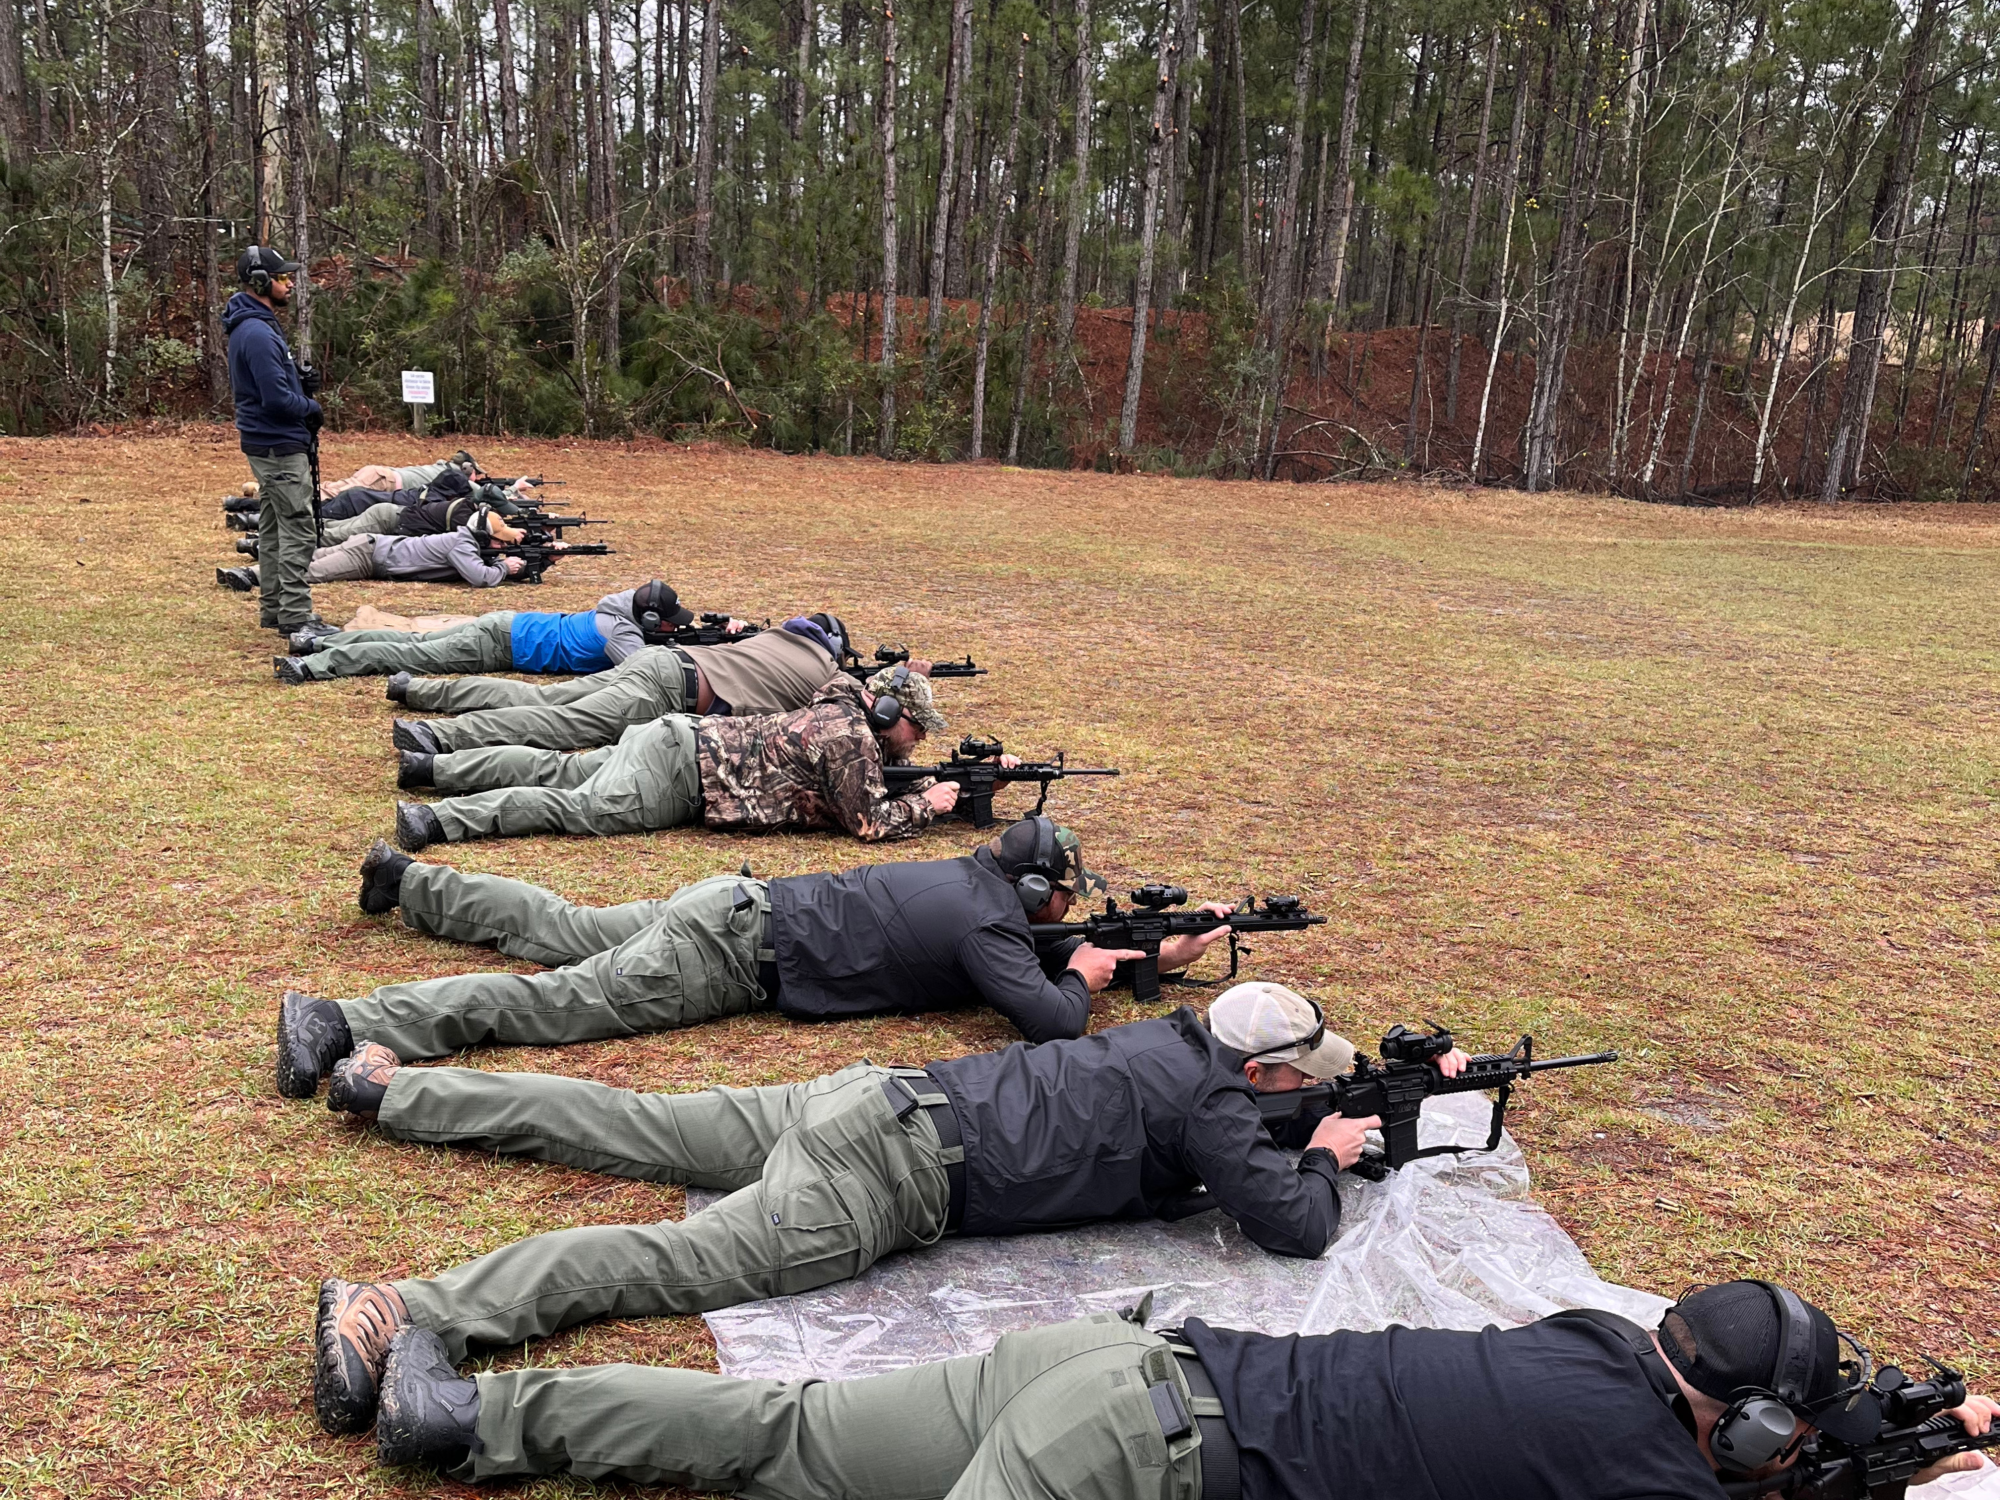 Police training at shooting range